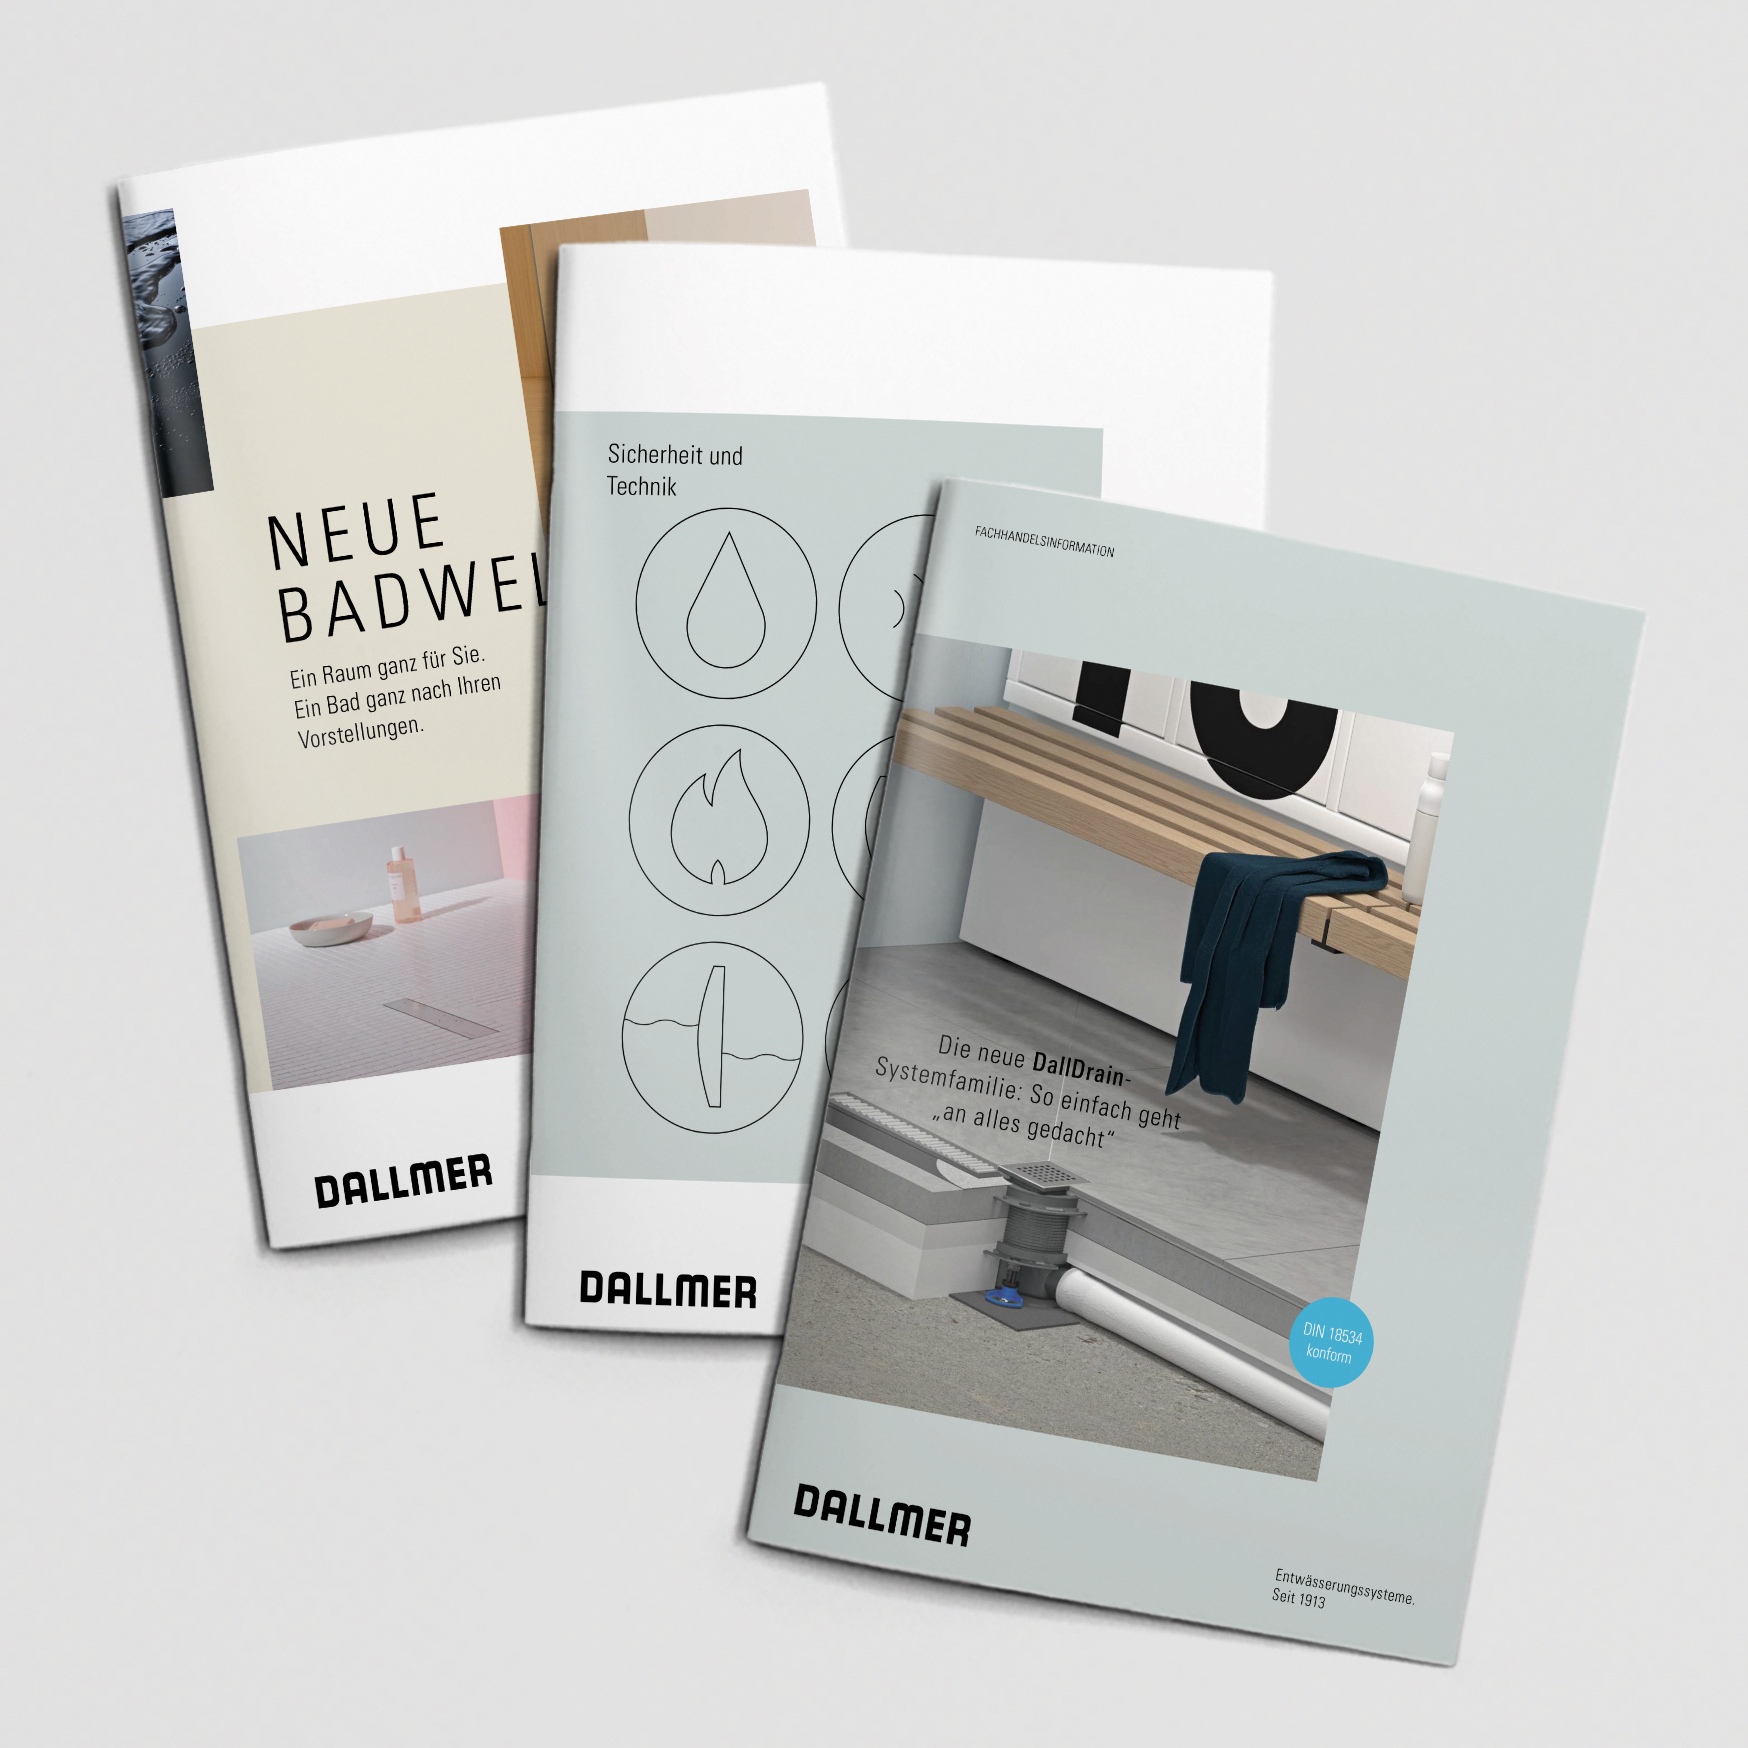 Entwässerungsspezialist Dallmer hat drei neue Broschüren sowohl für Fachpublikum als auch für Privatpersonen aufgelegt, die zudem online auf der Dallmer-Website abrufbar sind. Foto: Dallmer GmbH + Co. KG